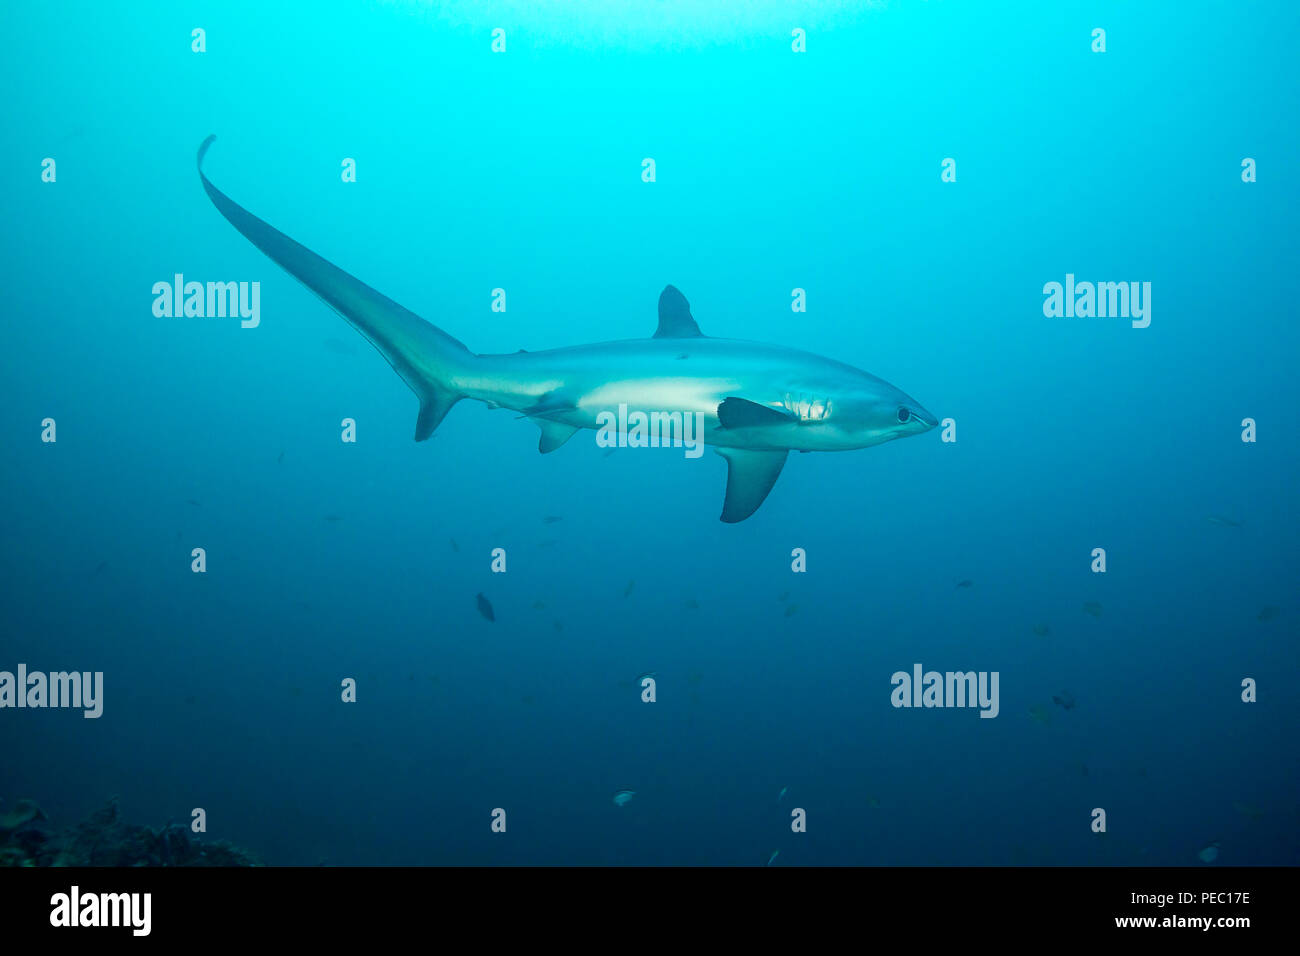 Es gibt drei Arten von Thresher Sharks alle durch die unverkennbar länglichen oberen Lappen der Schwanzflosse geprägt. Dieser, der pelagischen Schw Stockfoto